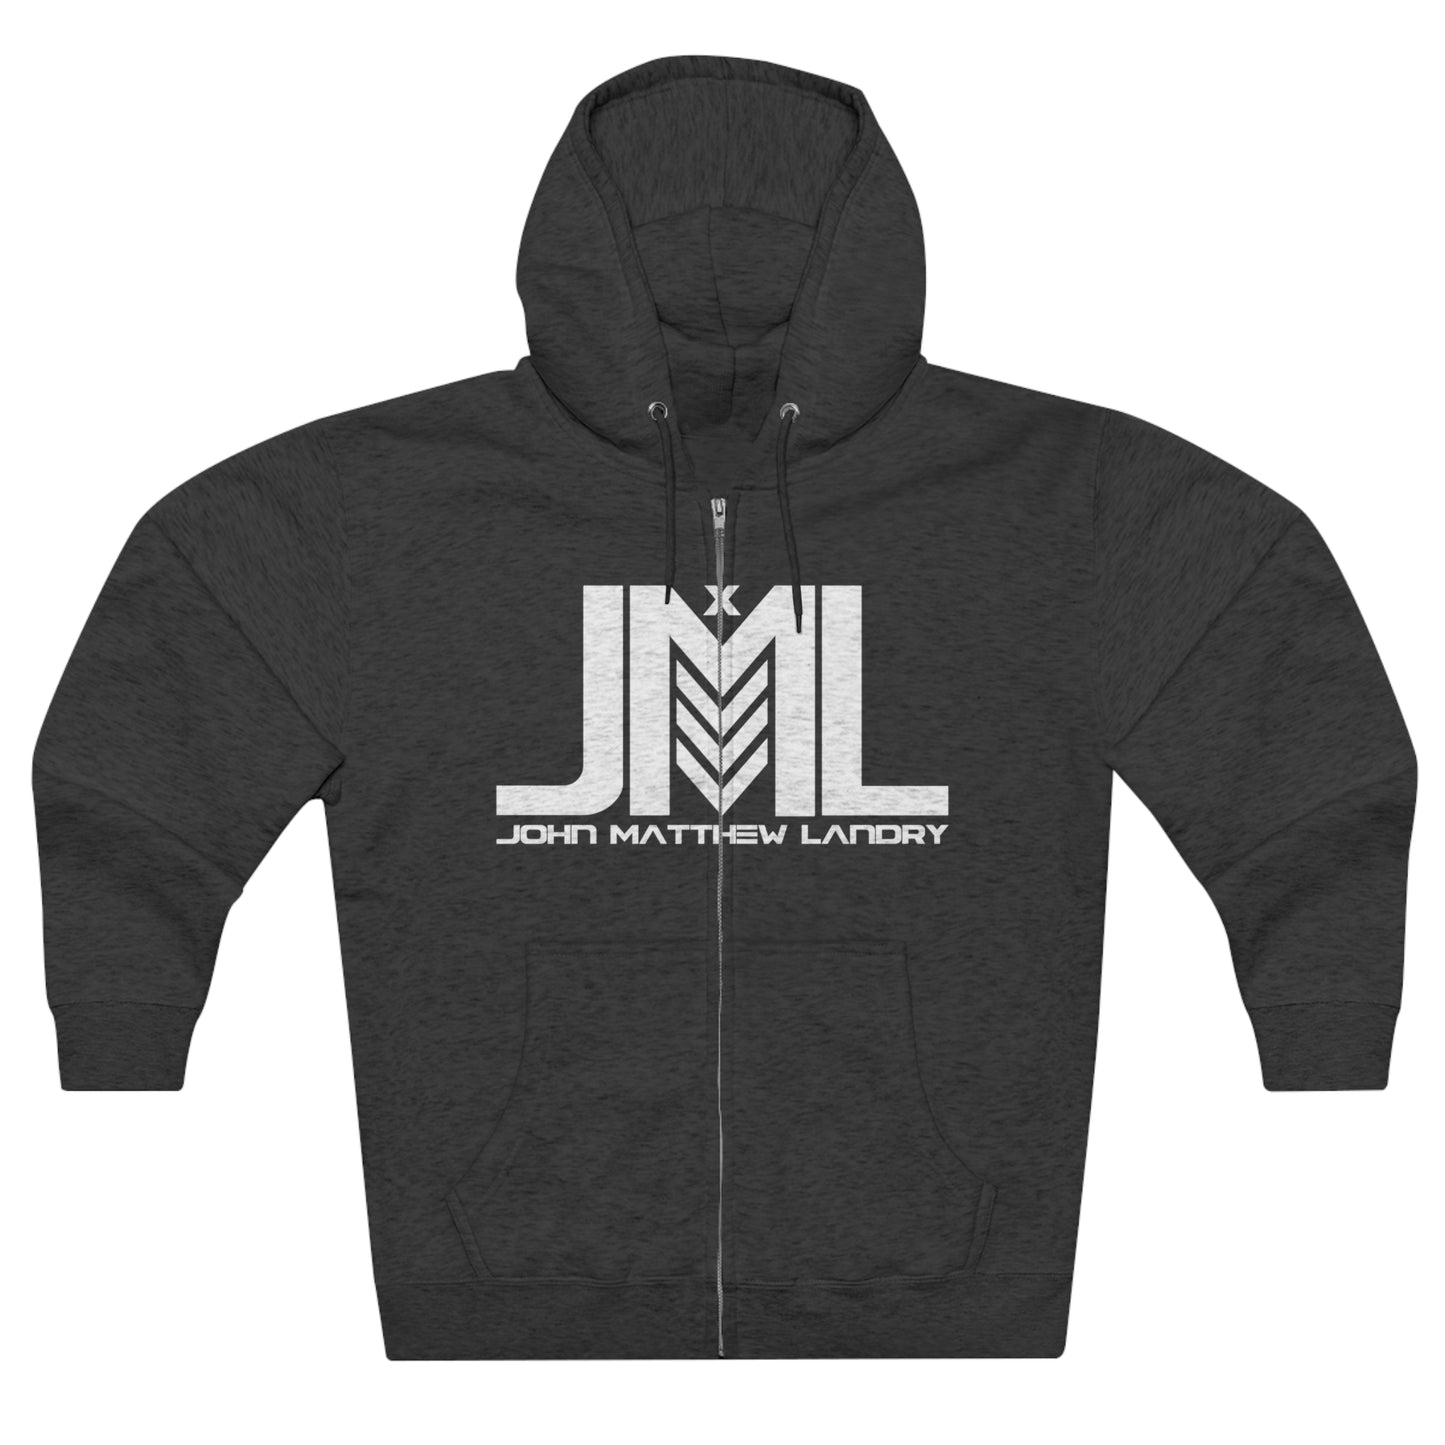 JML Unisex Premium Full Zip Hoodie